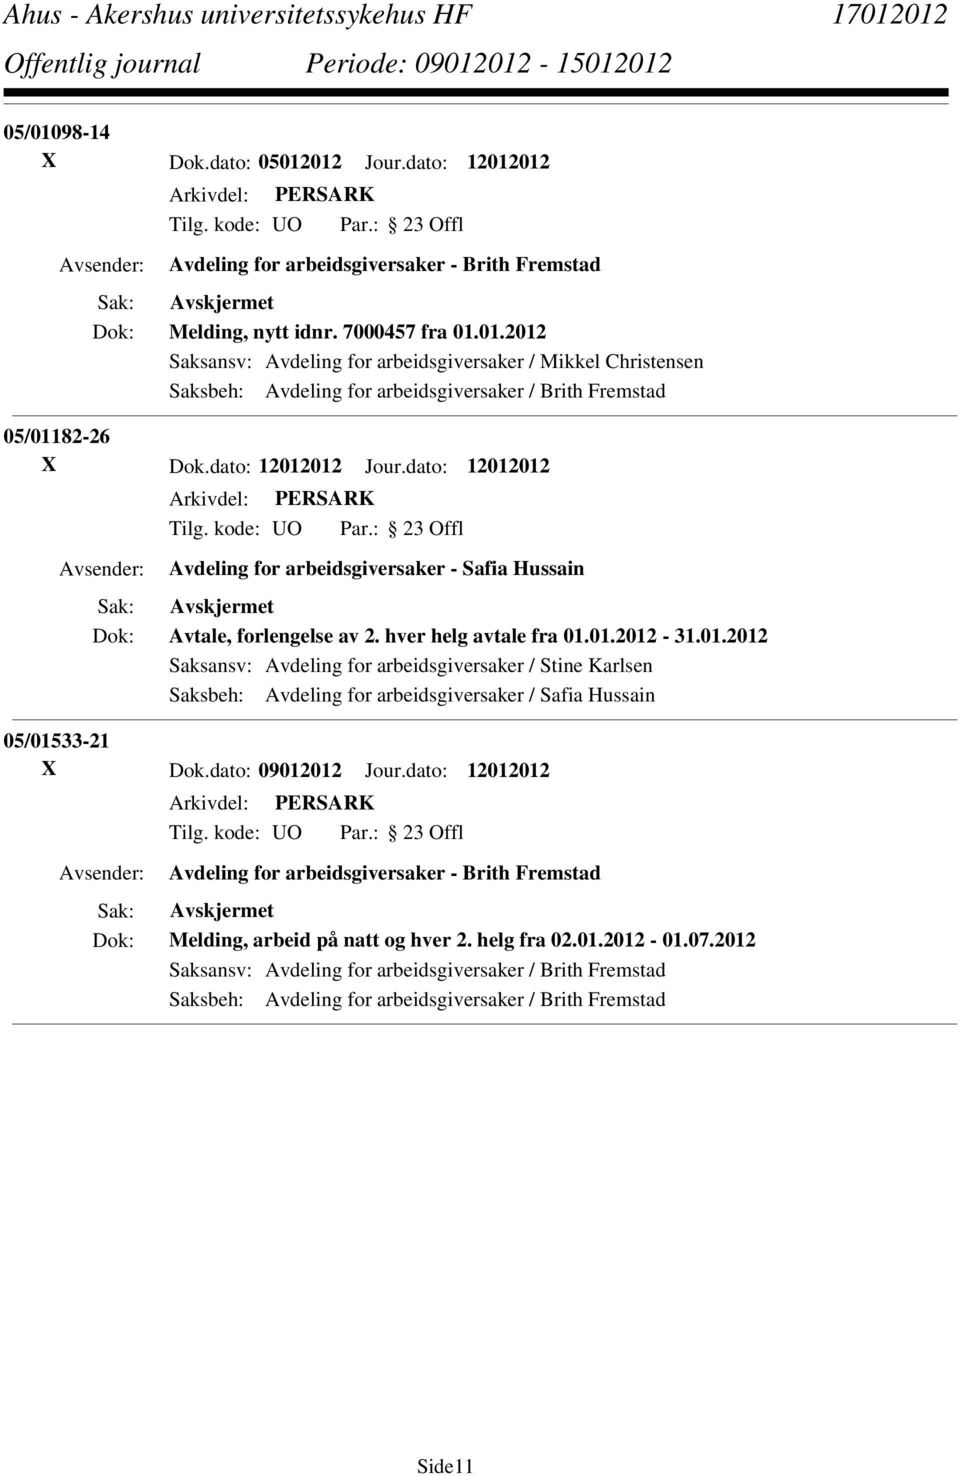 dato: 09012012 Jour.dato: 12012012 Avdeling for arbeidsgiversaker - Brith Fremstad Melding, arbeid på natt og hver 2. helg fra 02.01.2012-01.07.